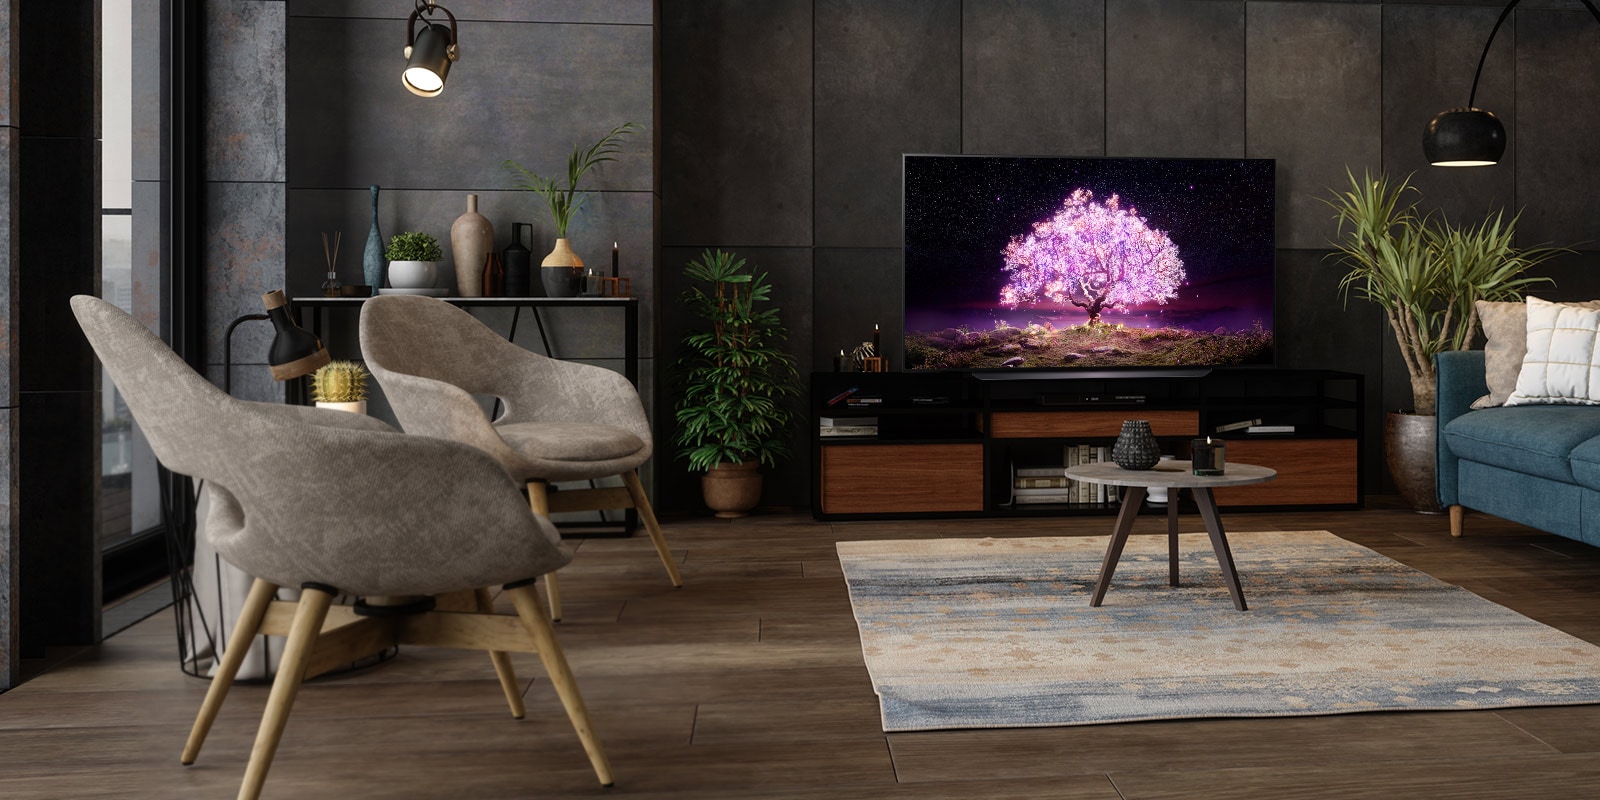 טלוויזיה מציגה עץ המפיק אור סגול בבית מפואר